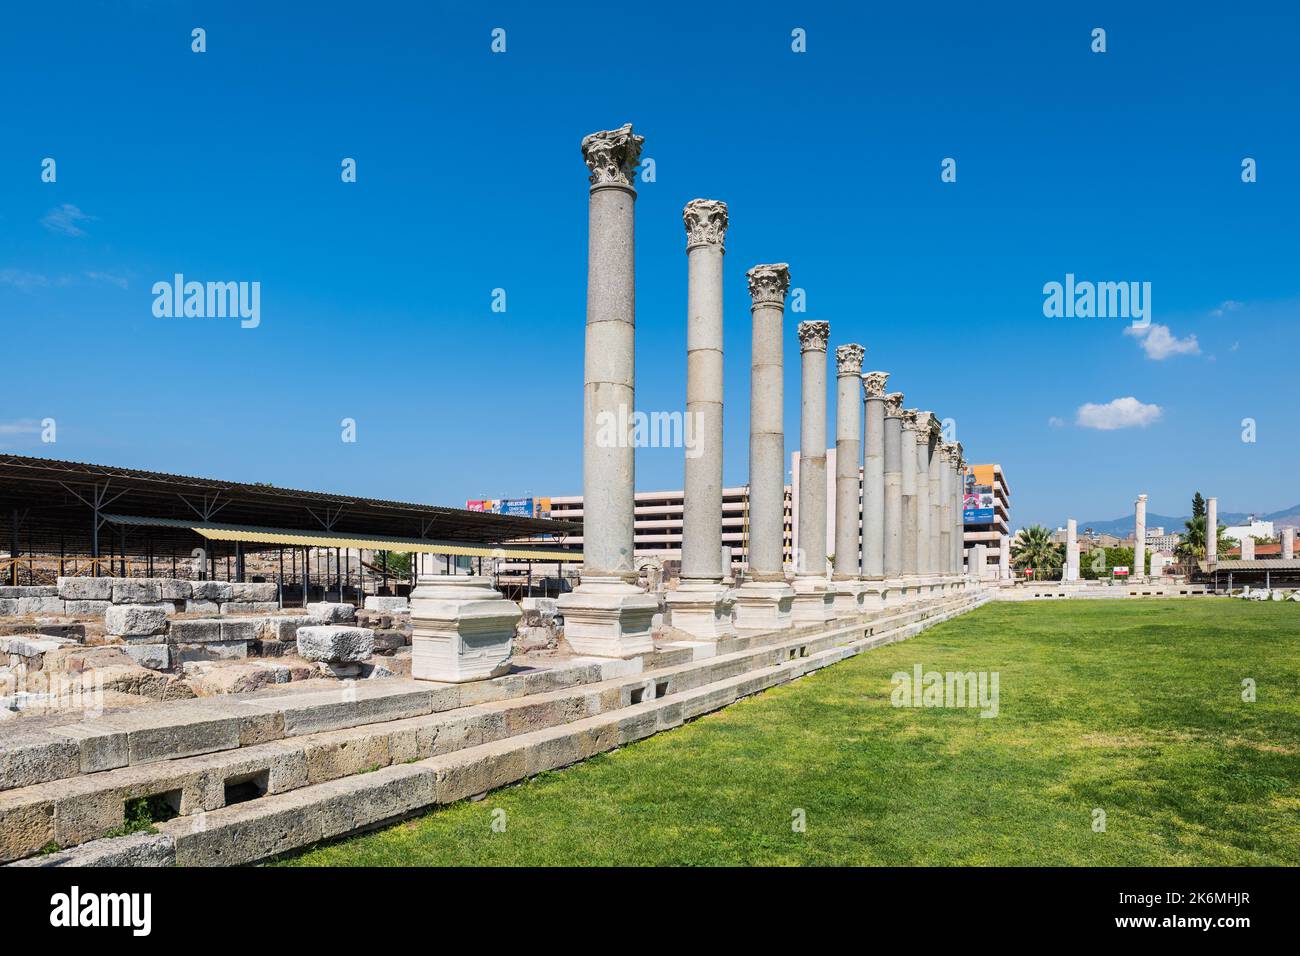 Agora de Smyrna à Izmir, Turquie. Également connu sous le nom d'Agora de İzmir, un ancien site archéologique romain dans le centre-ville d'Izmir, Turquie Banque D'Images